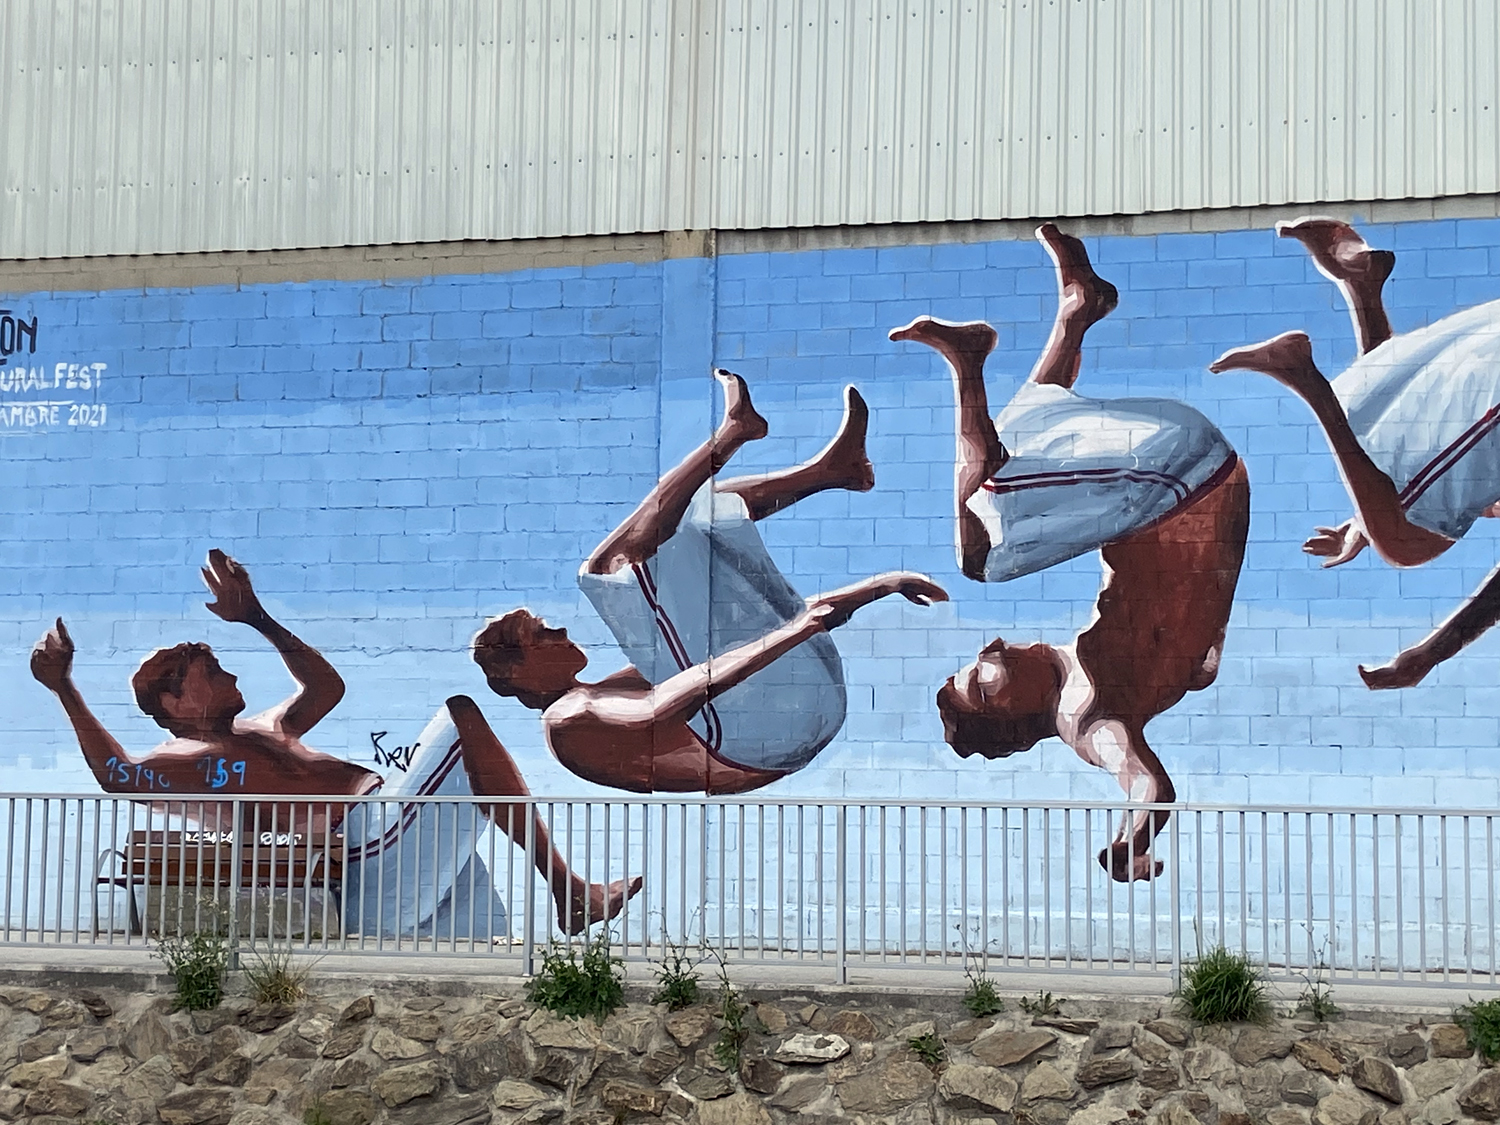 Arte urbano de Ru8icon1 en Galicia Cromático Mural Fest. de Cambre